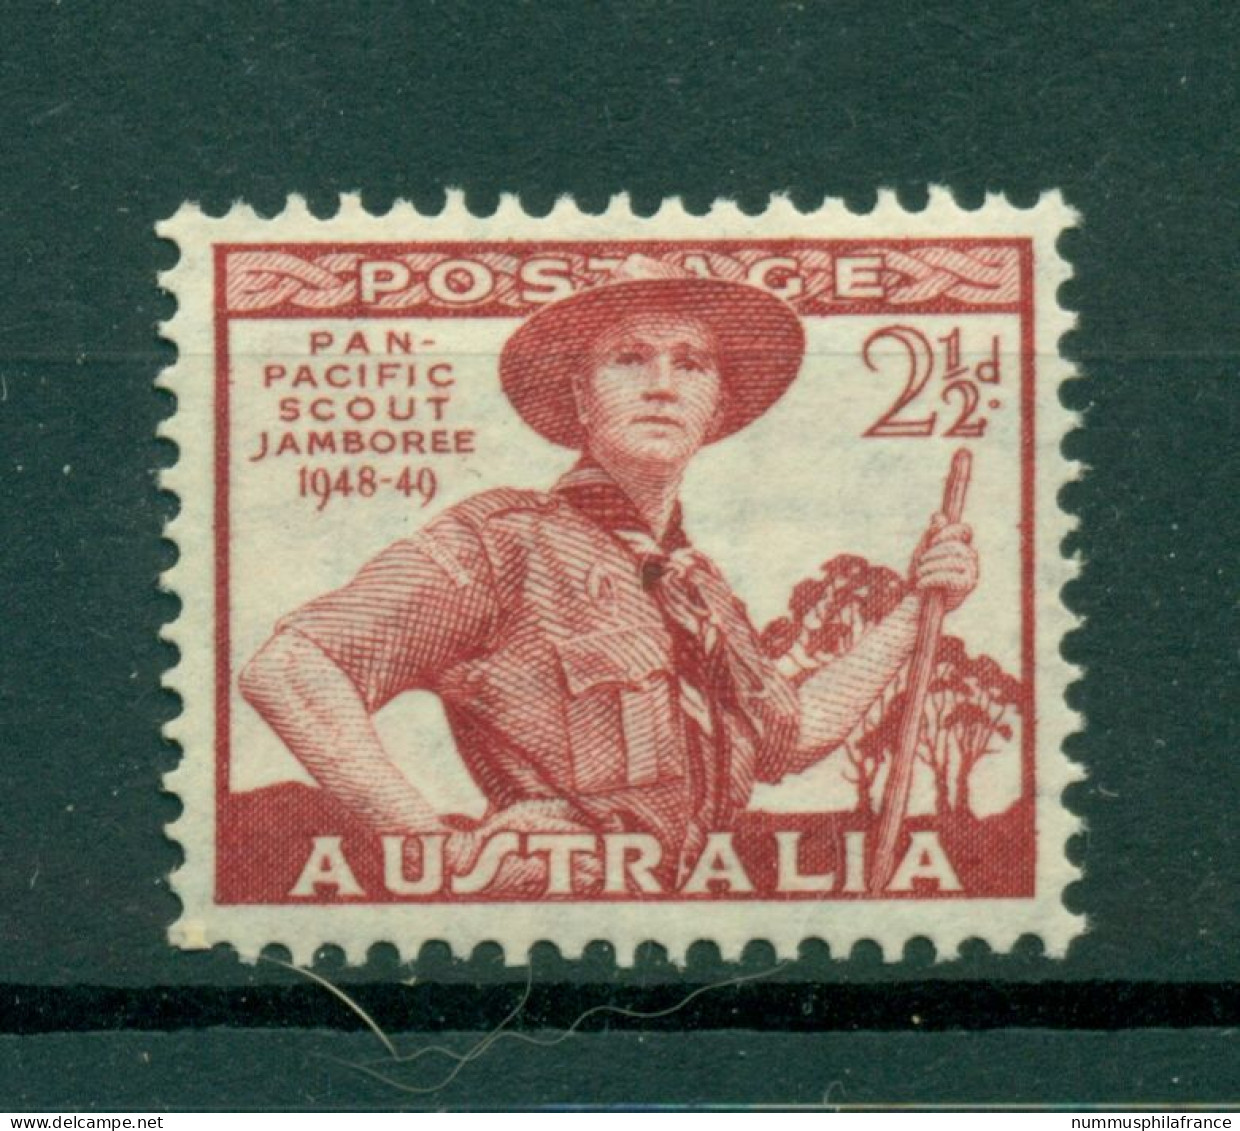 Australie 1948 - Y & T N. 163 - Jamboree Du Pacifique (Michel N. 193) - Neufs